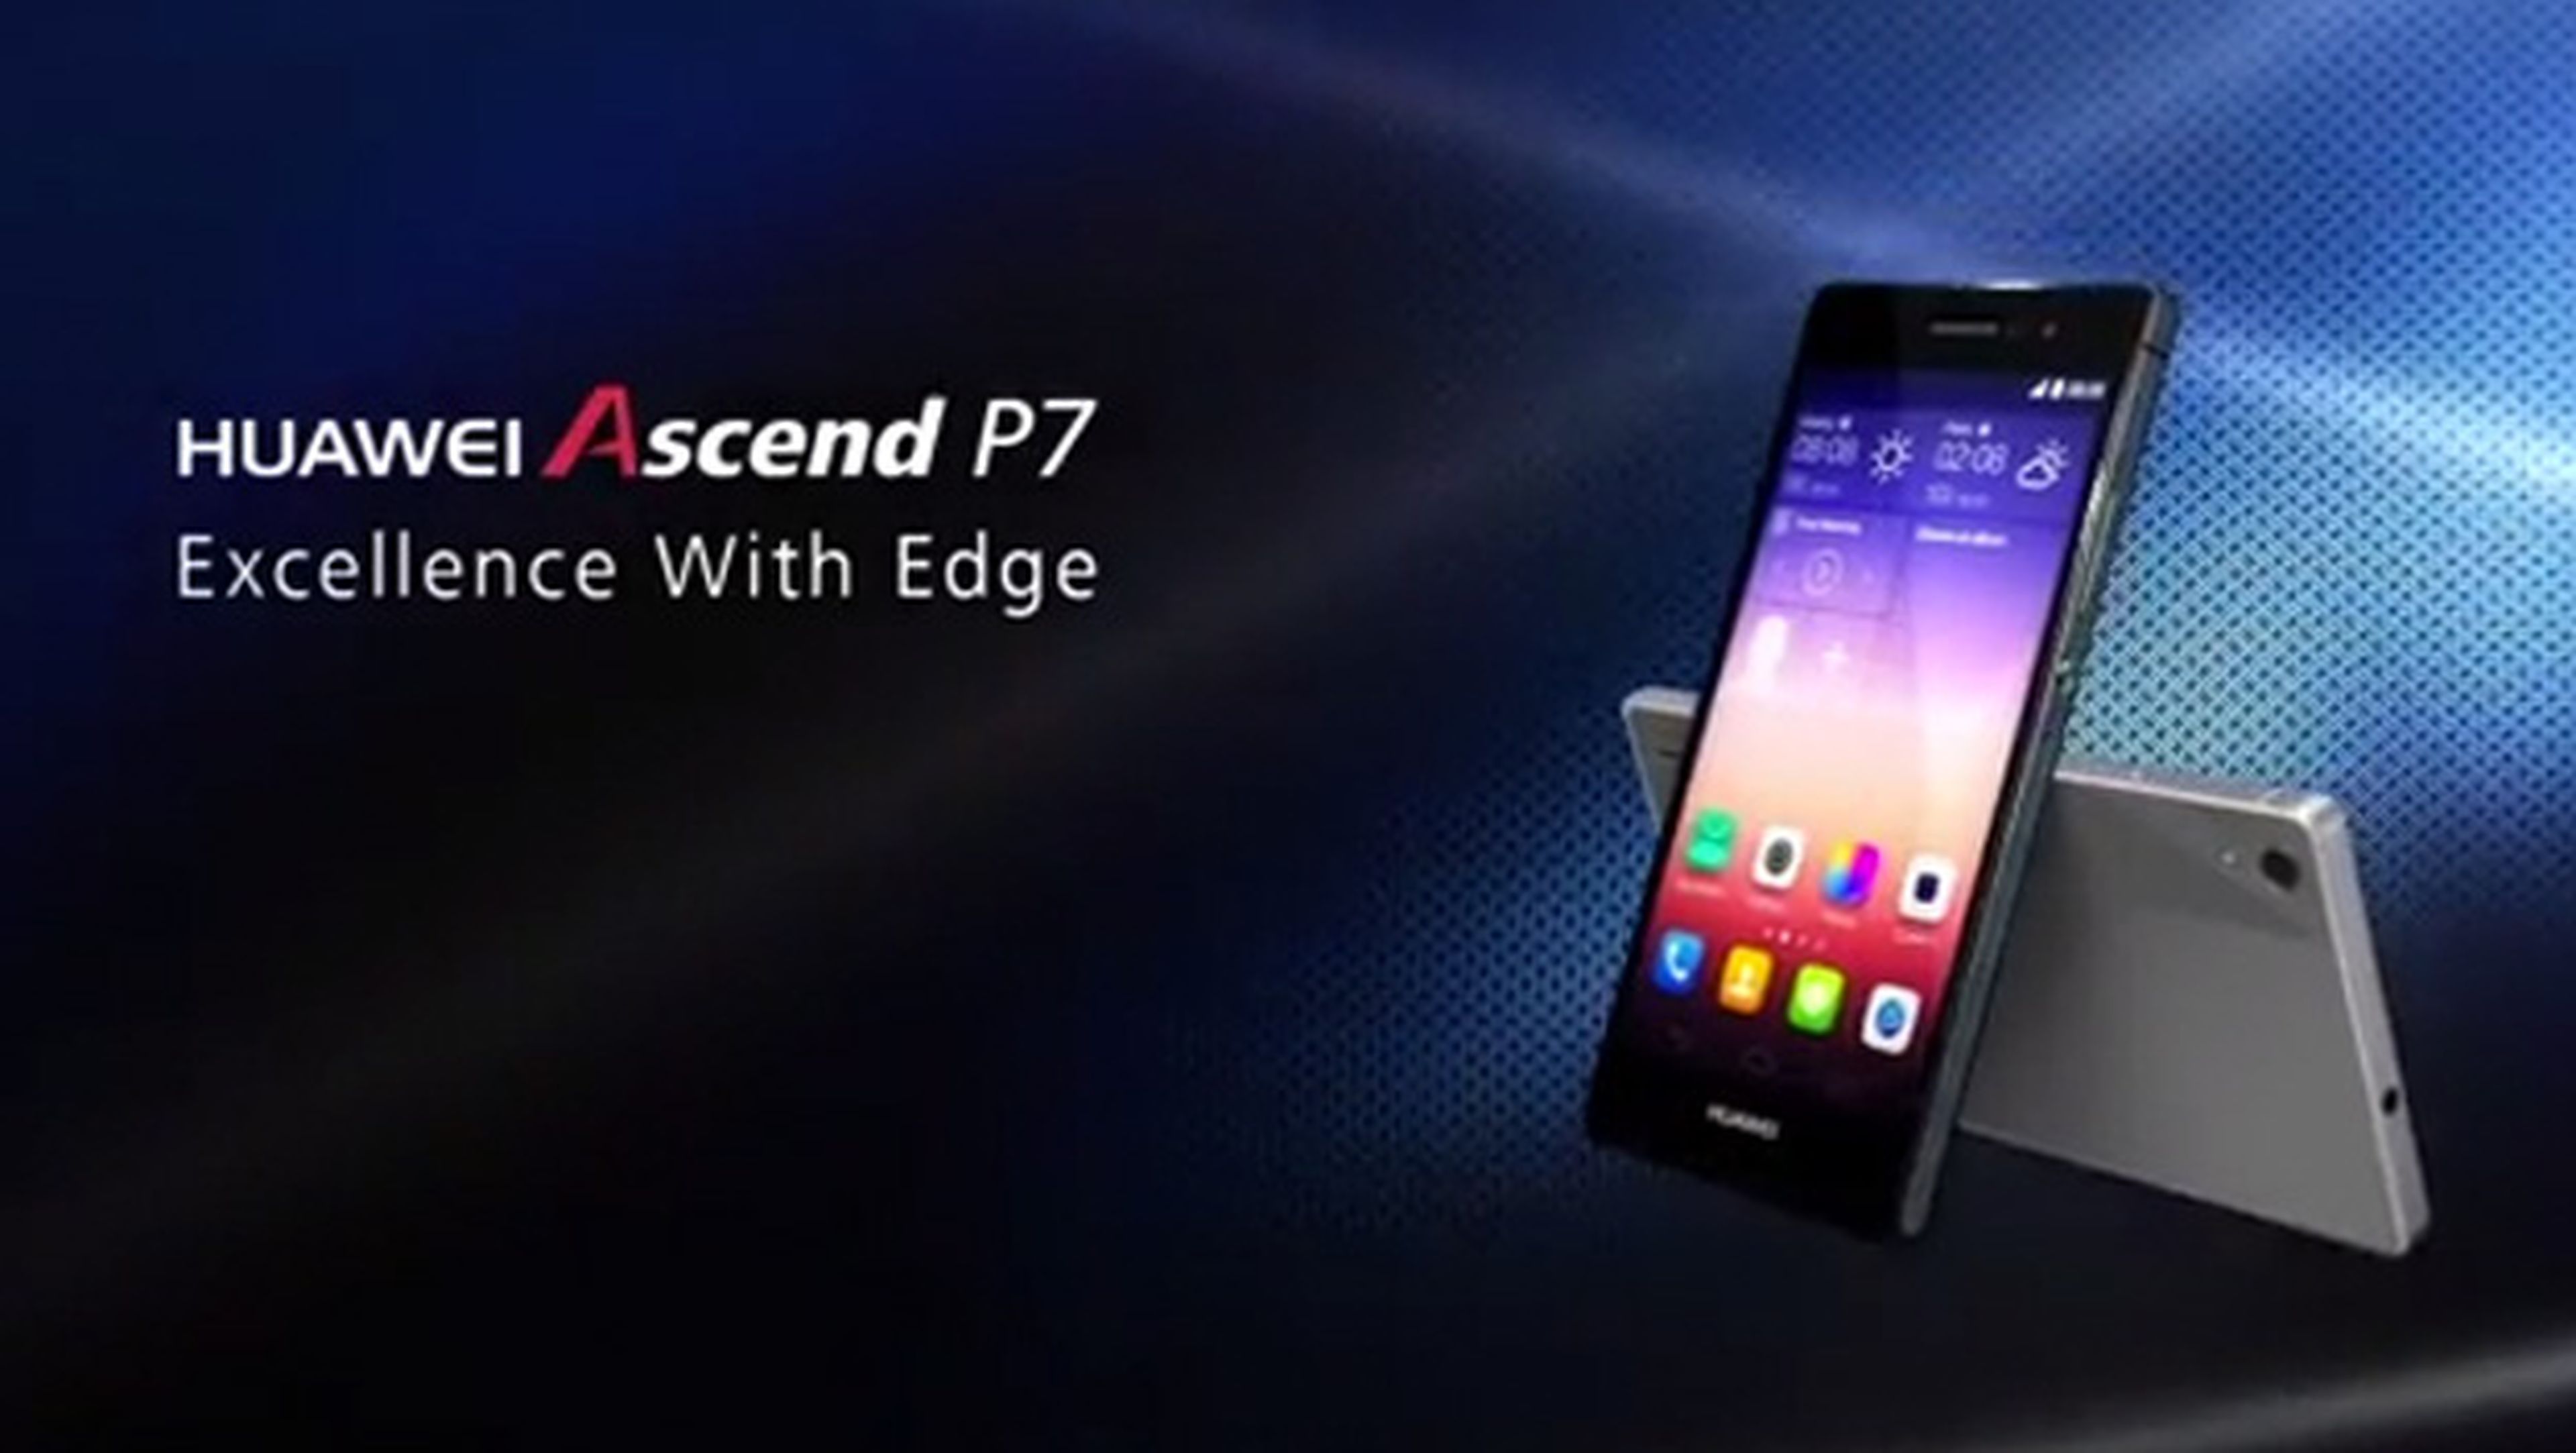 Huawei Ascend P7, delgado y potente